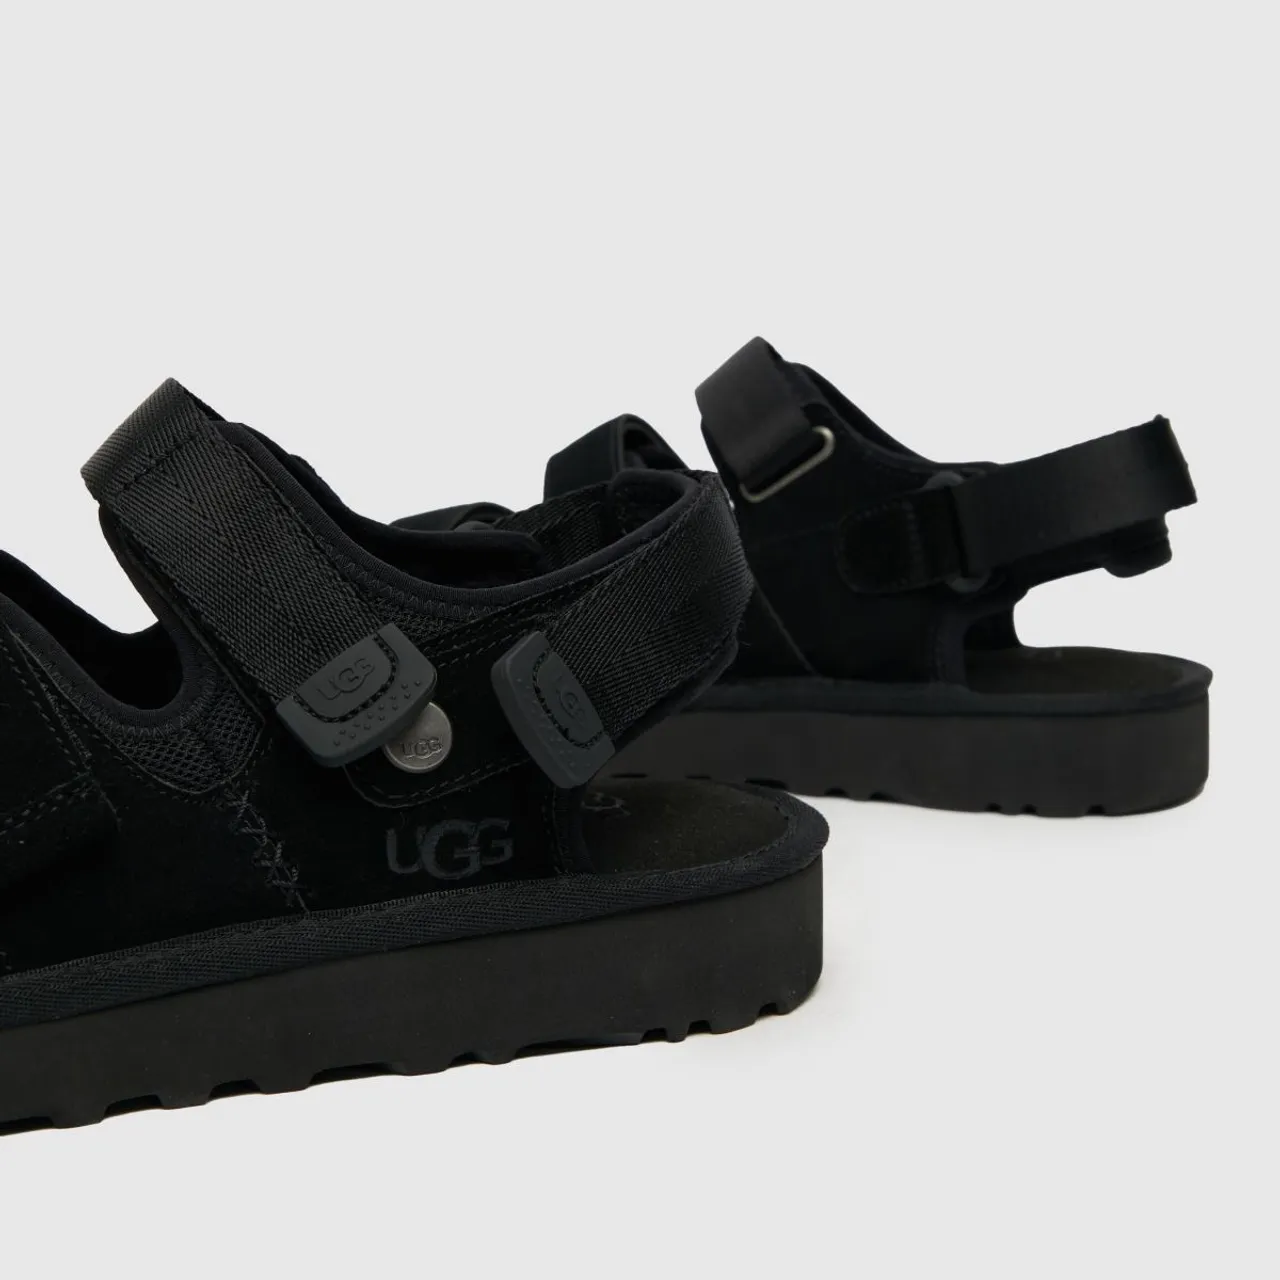 Ugg Goldencoast Multi Strap Sandals in Black